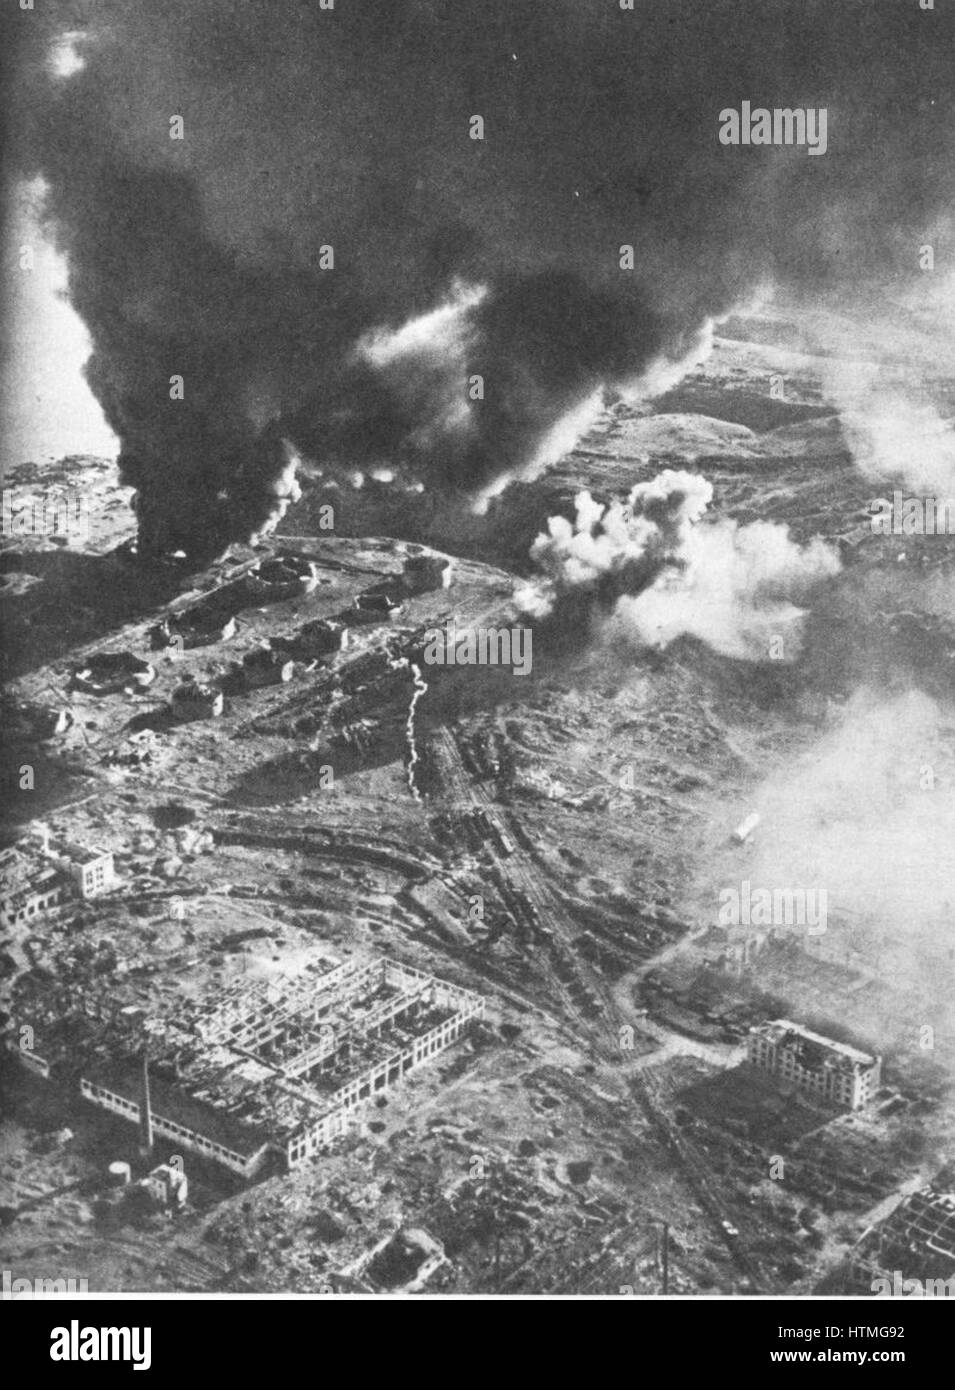 Schlacht von Stalingrad - Luftbild von Kraftstoff speichert in Brand. Die Schlacht um Stalingrad zwischen Deutschland und der Sowjetunion dauerte vom 17. Juli 1942 bis 2. Februar 1943. Die mosty brutal und blutigsten Kämpfe des zweiten Weltkriegs, behauptete es fast 2 Mühle Stockfoto